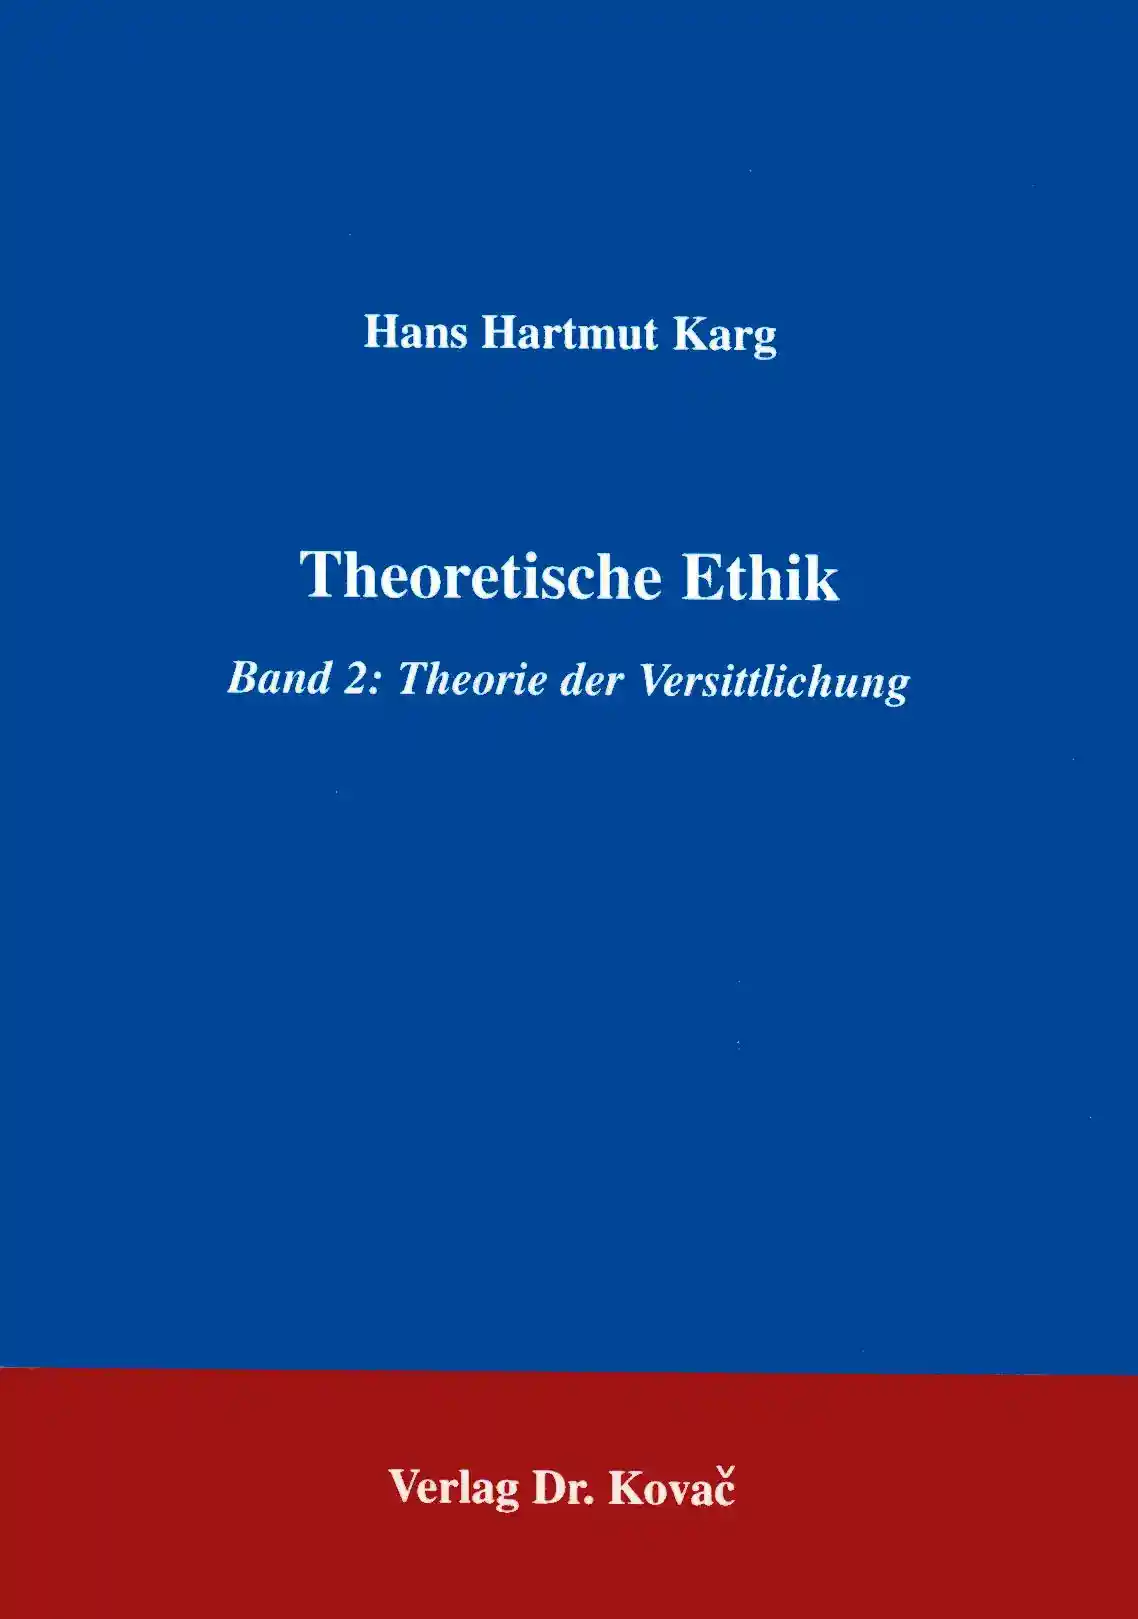 Theoretische Ethik (Forschungsarbeit)